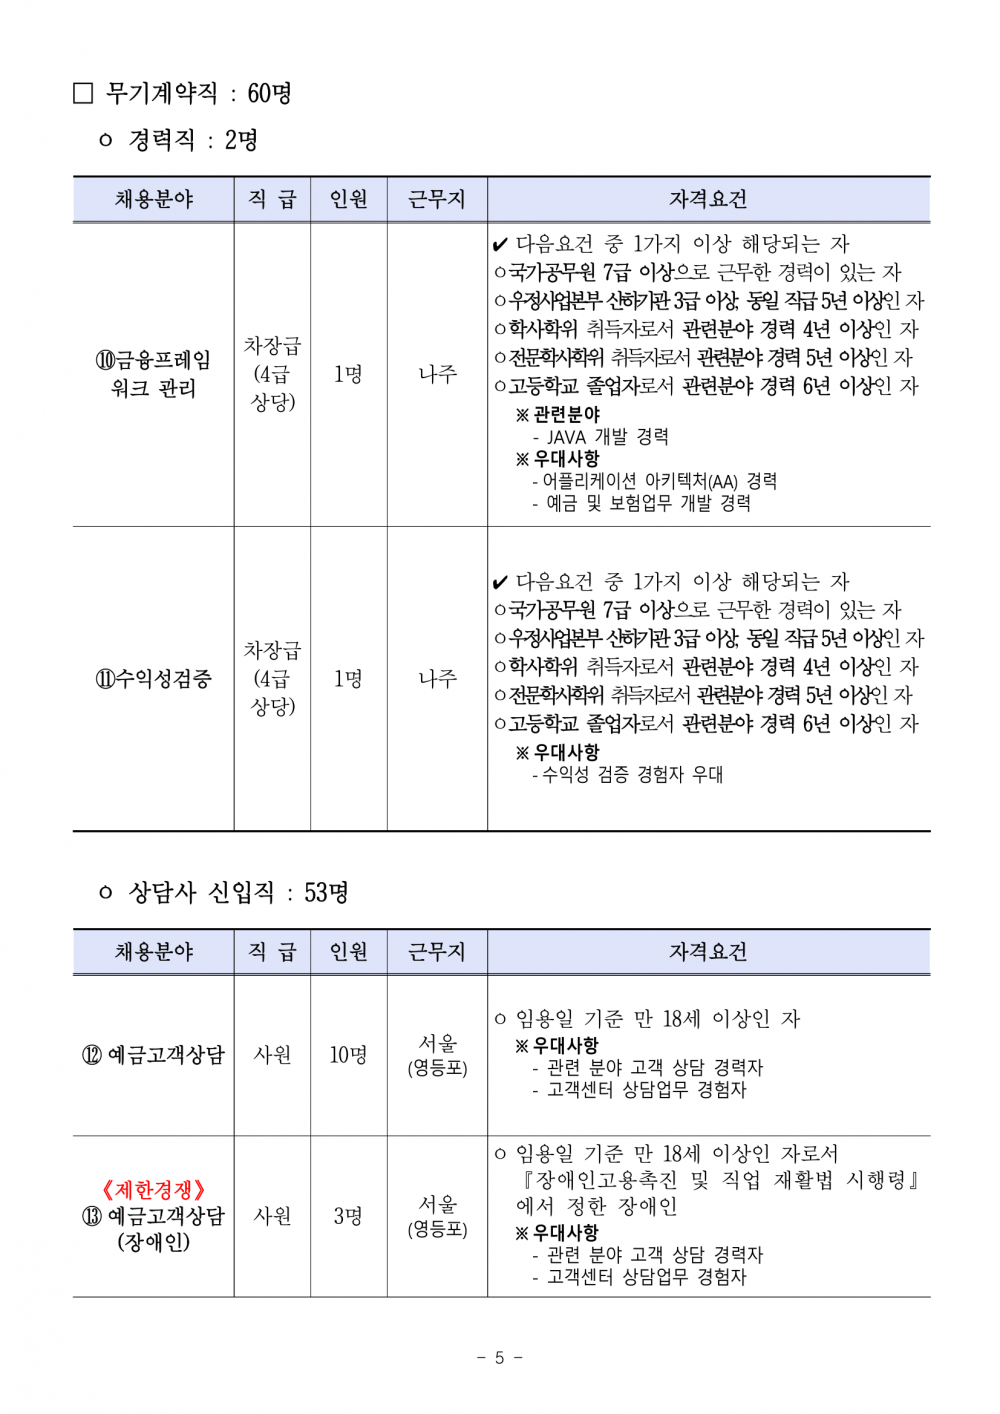 우체국금융개발원_채용공고문-05